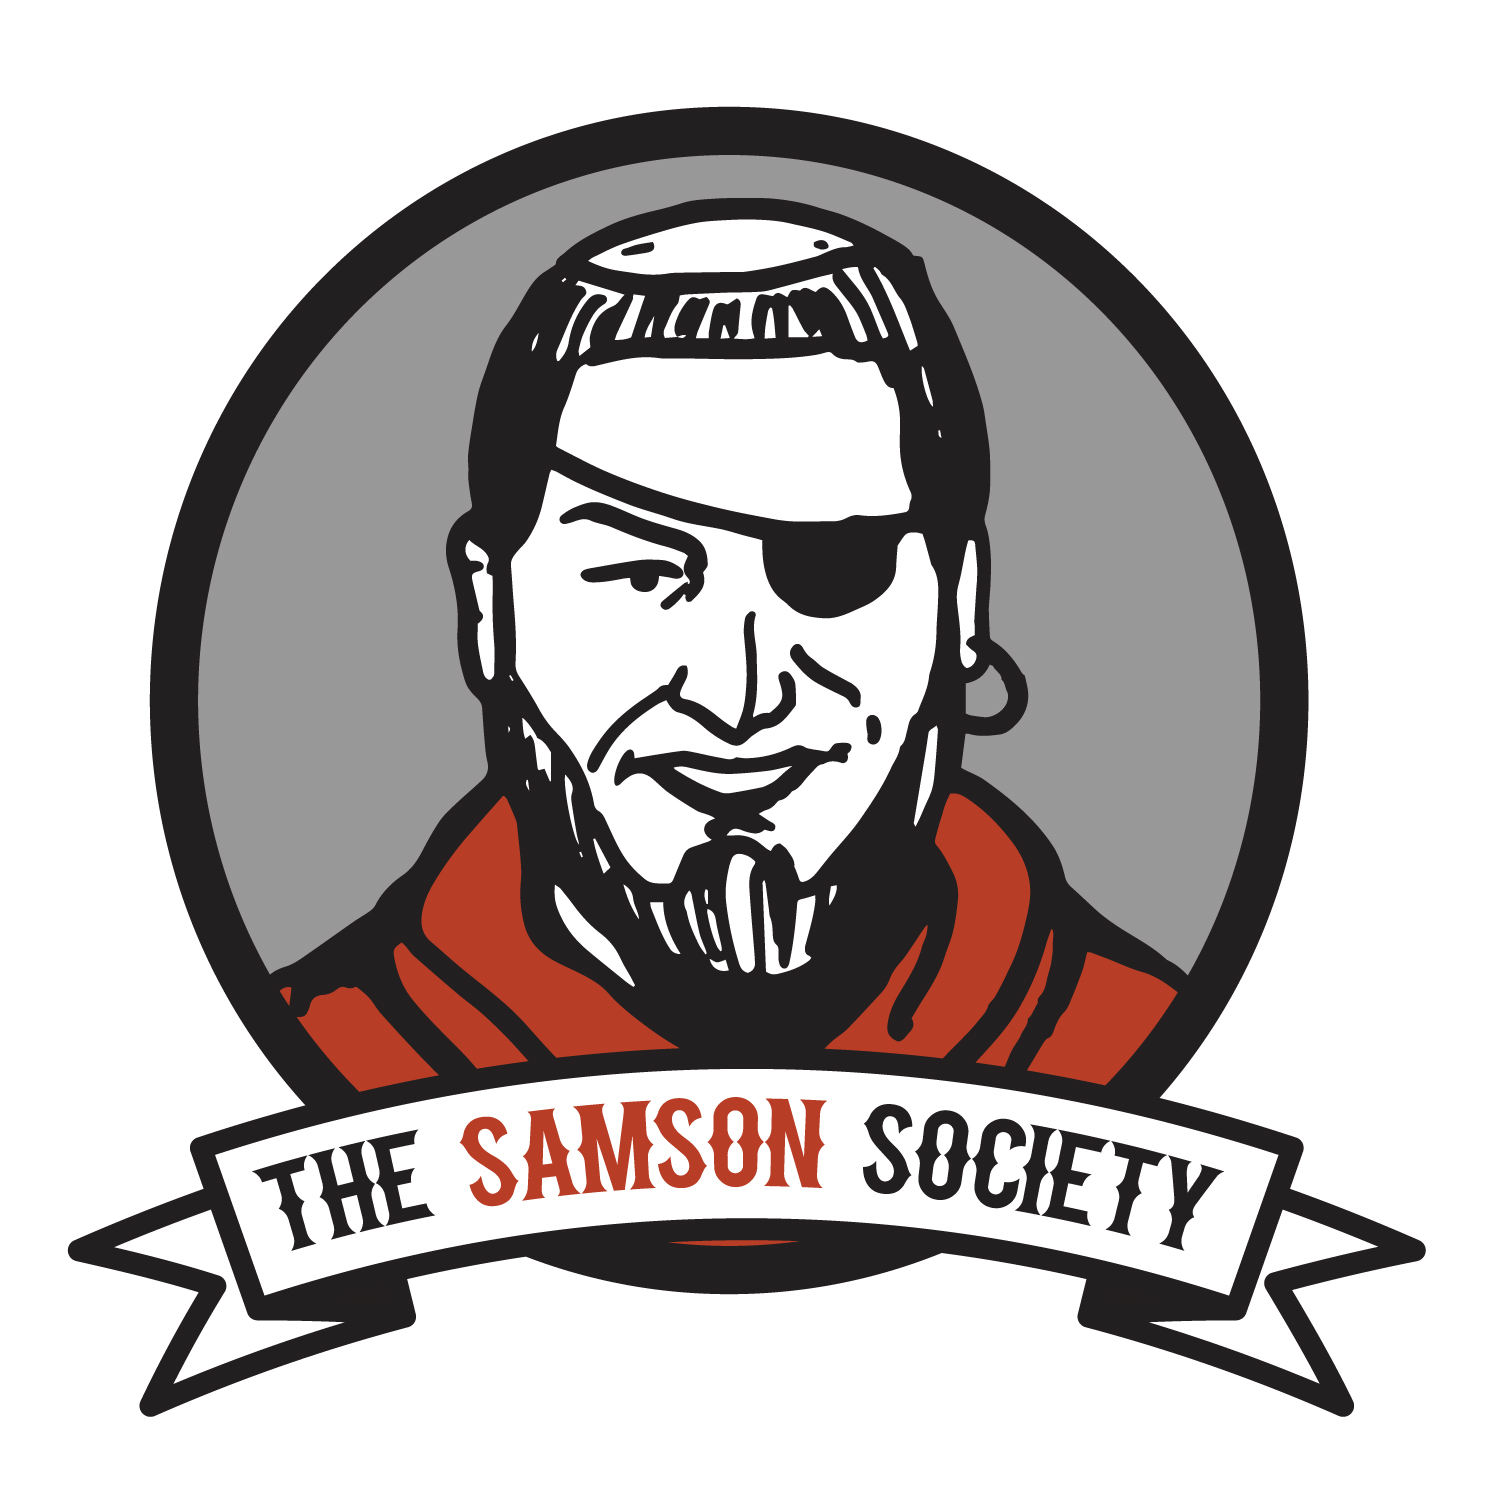 TheSamsonSociety